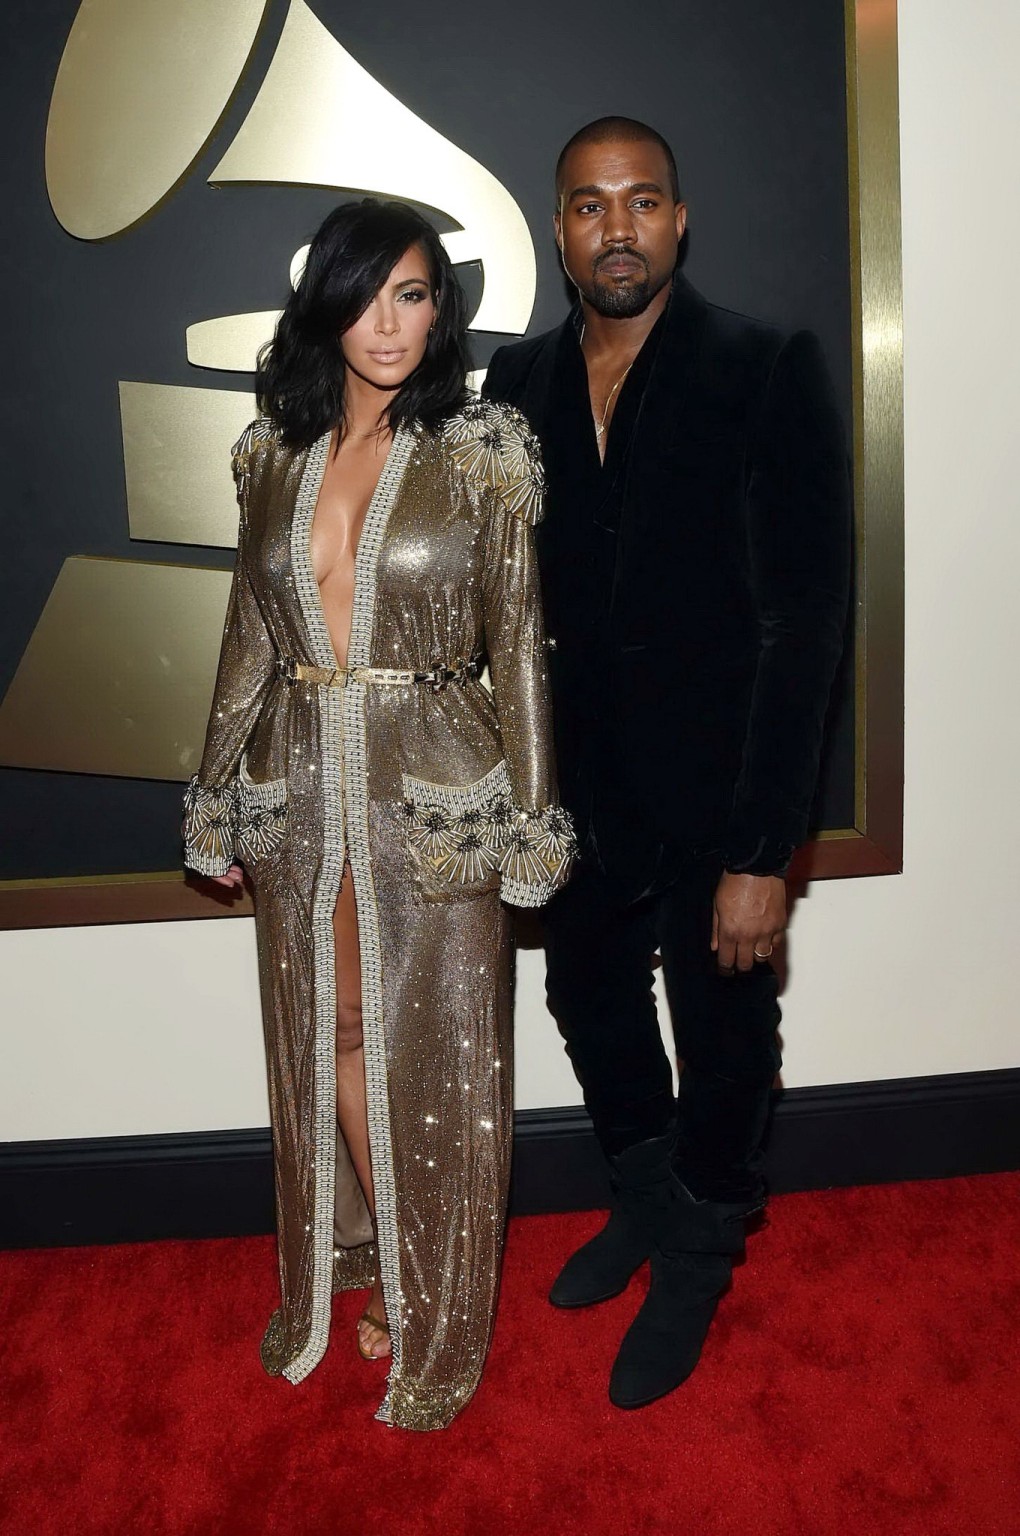 Kim Kardashian braless and pantyless in revealing golden smock arriving at 57th  #75173188